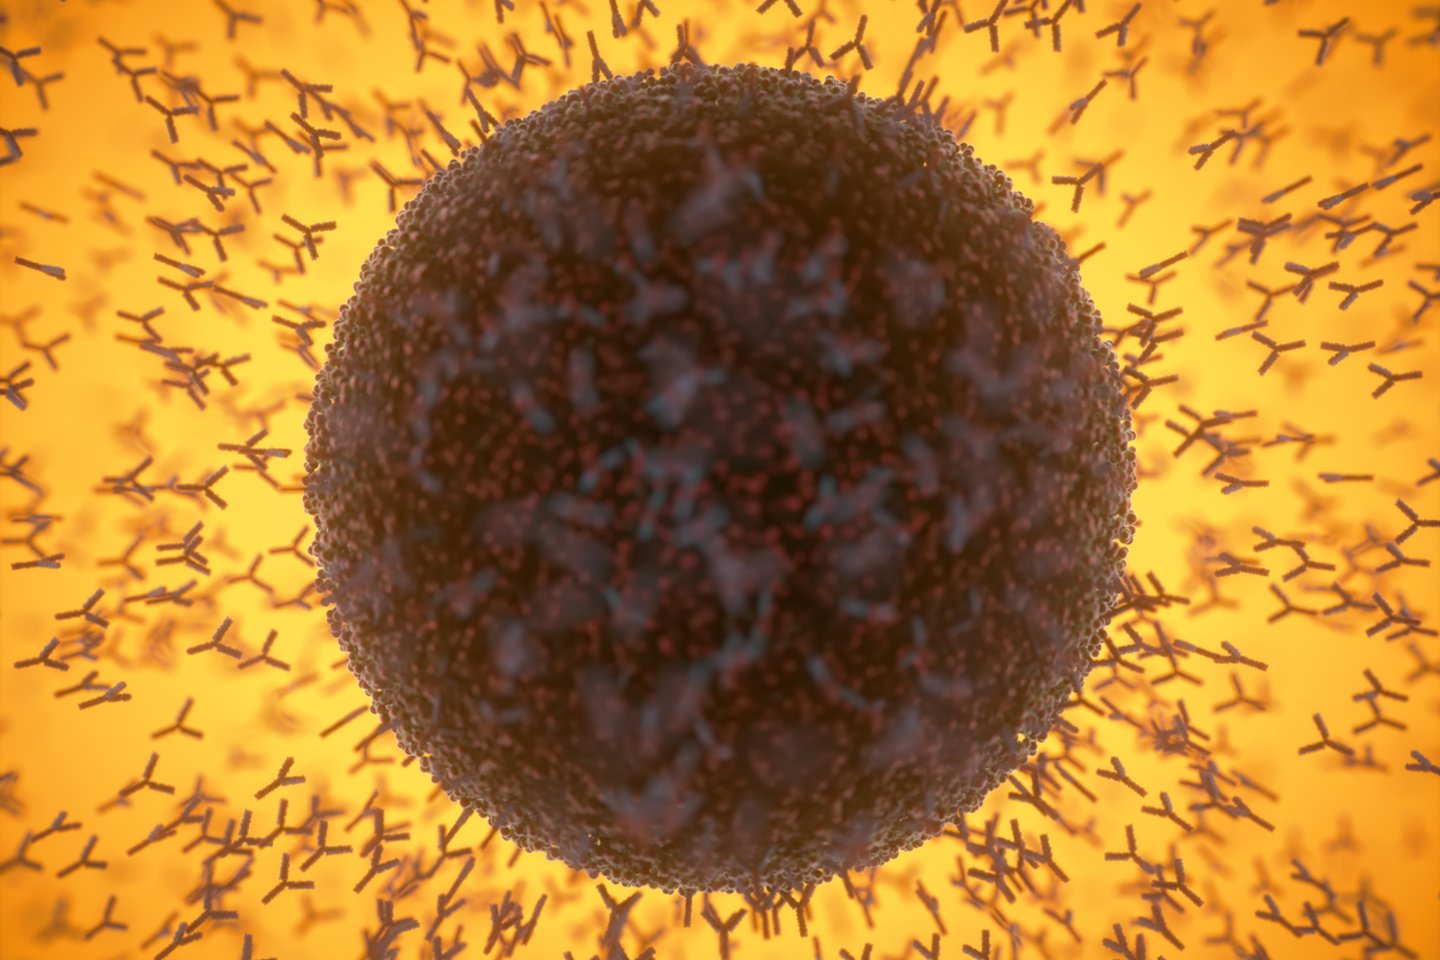  Koronaviruso antikūnai išlieka organizme „mažiausiai“ devynis mėnesius po infekcijos, teigia Londono imperatoriškasis koledžas ir Padujos universitetas.<br> 123rf iliustr.